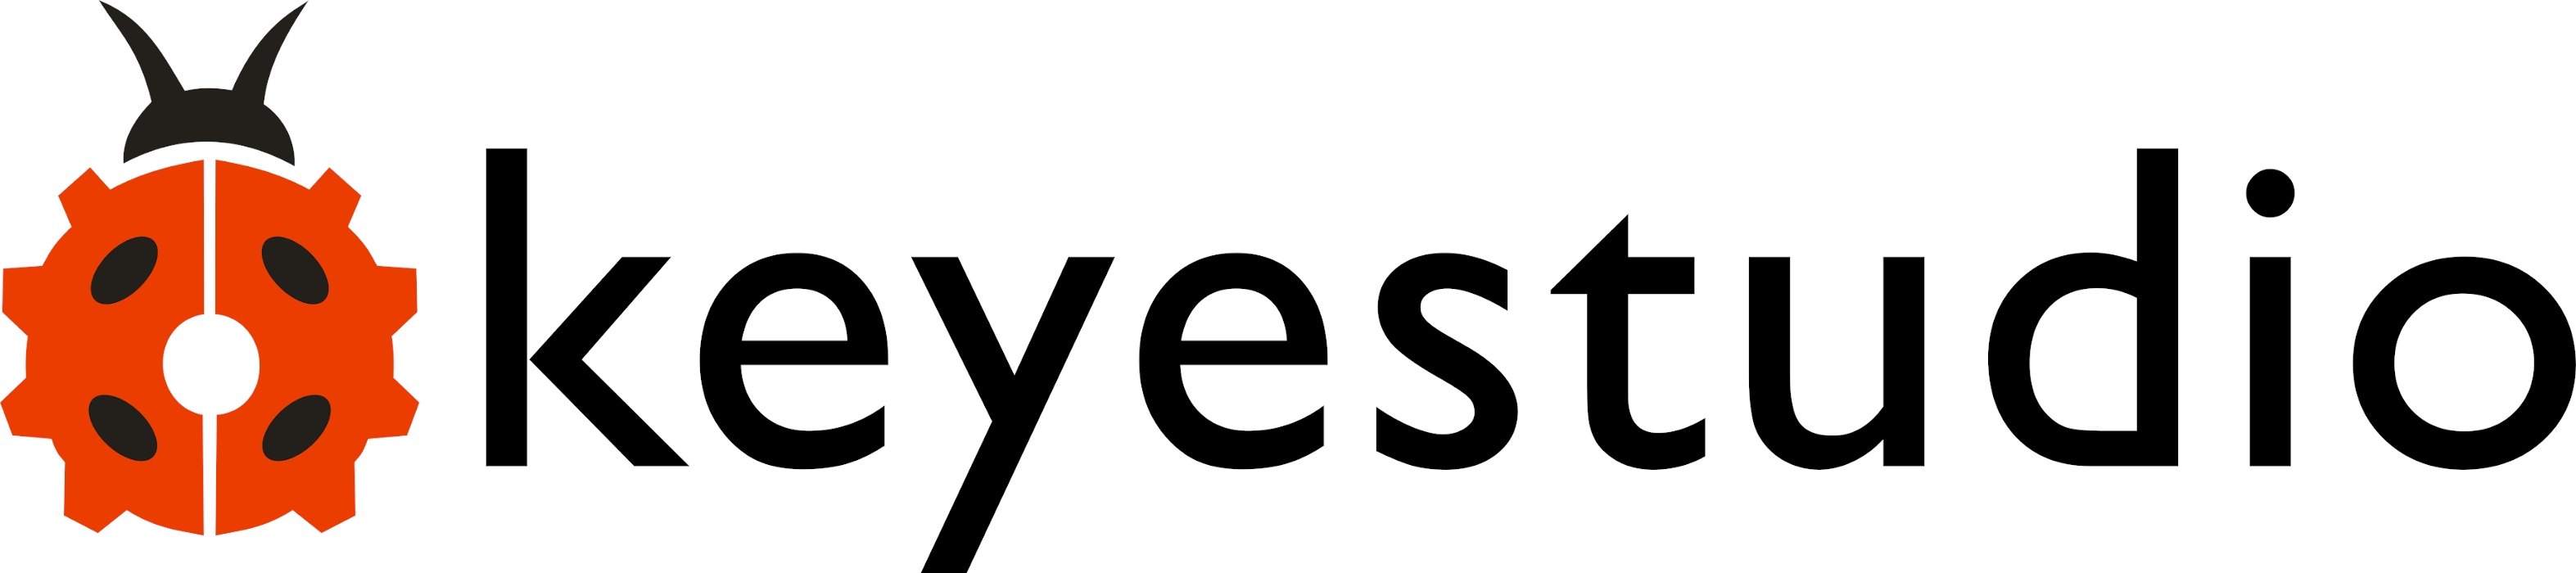 Keyestudio Brand